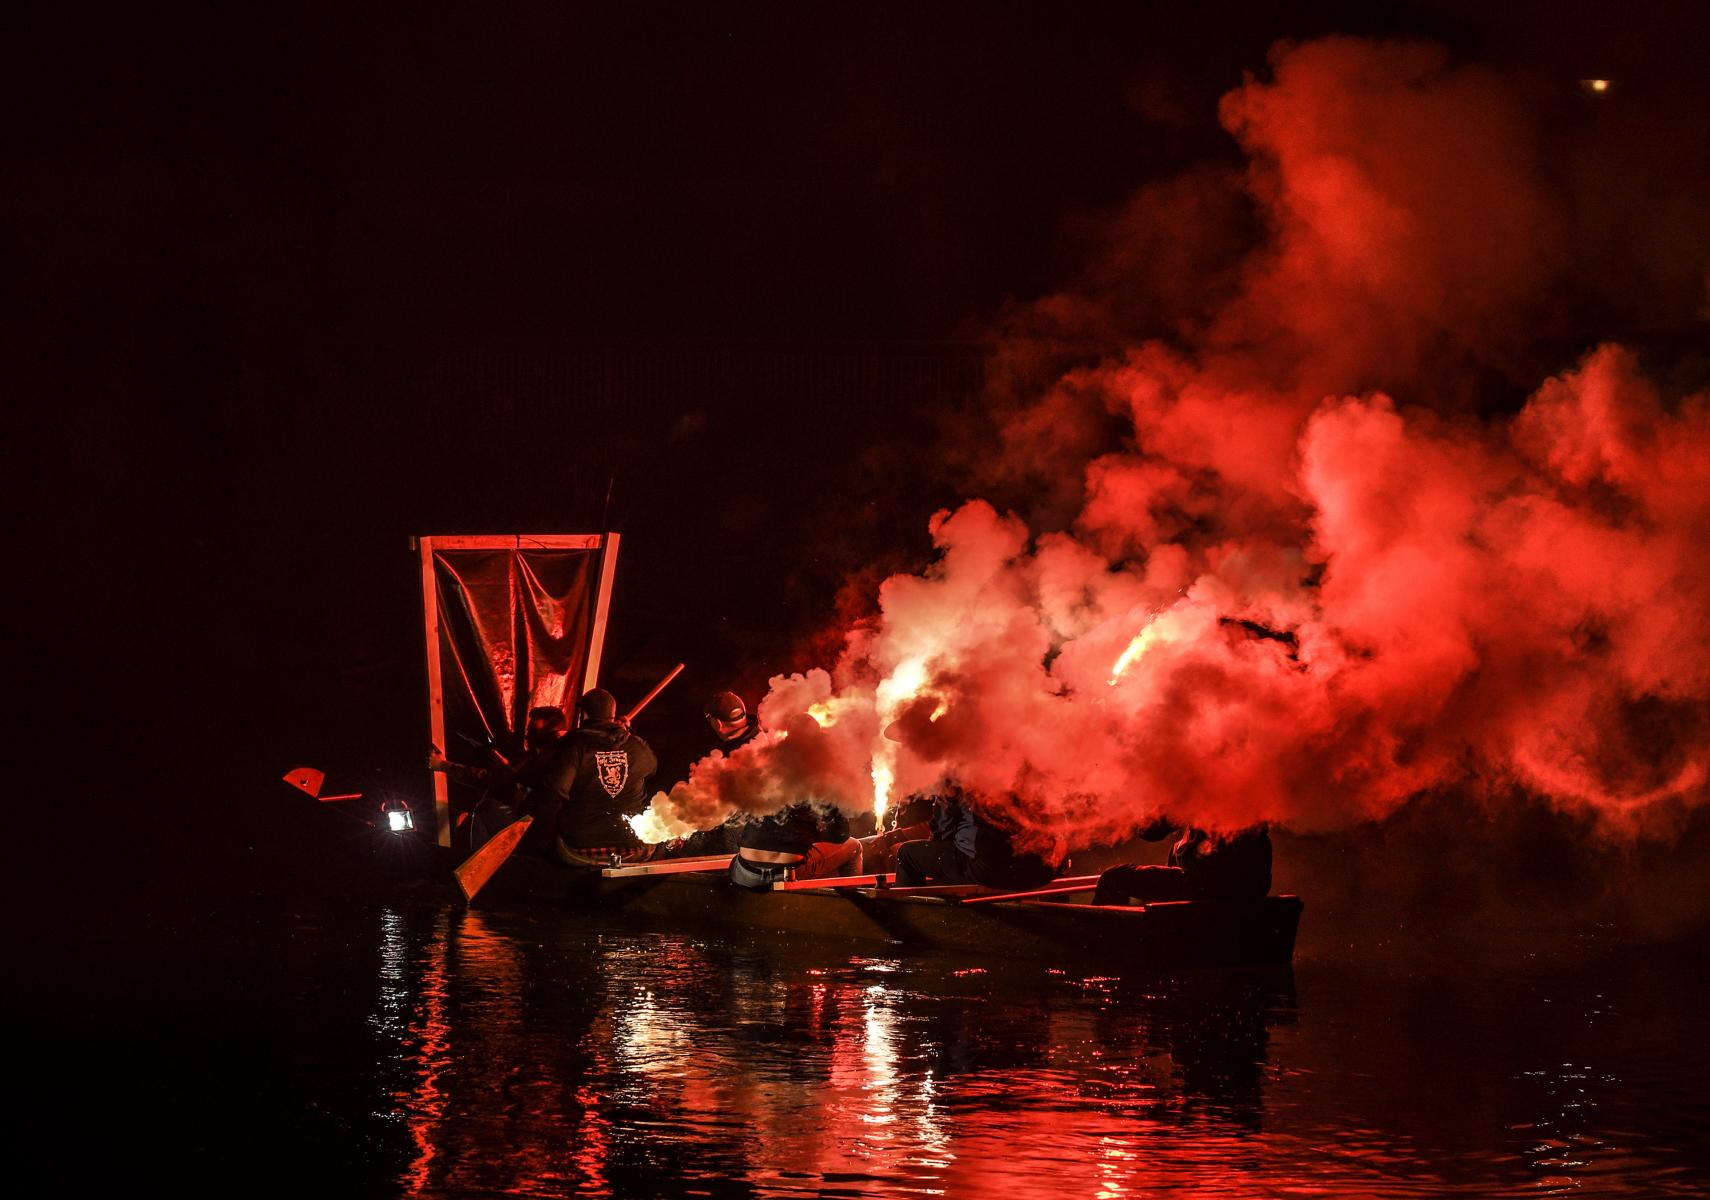 2018 - Jahresveranstaltung "Traun in Flammen" des Schifferverein